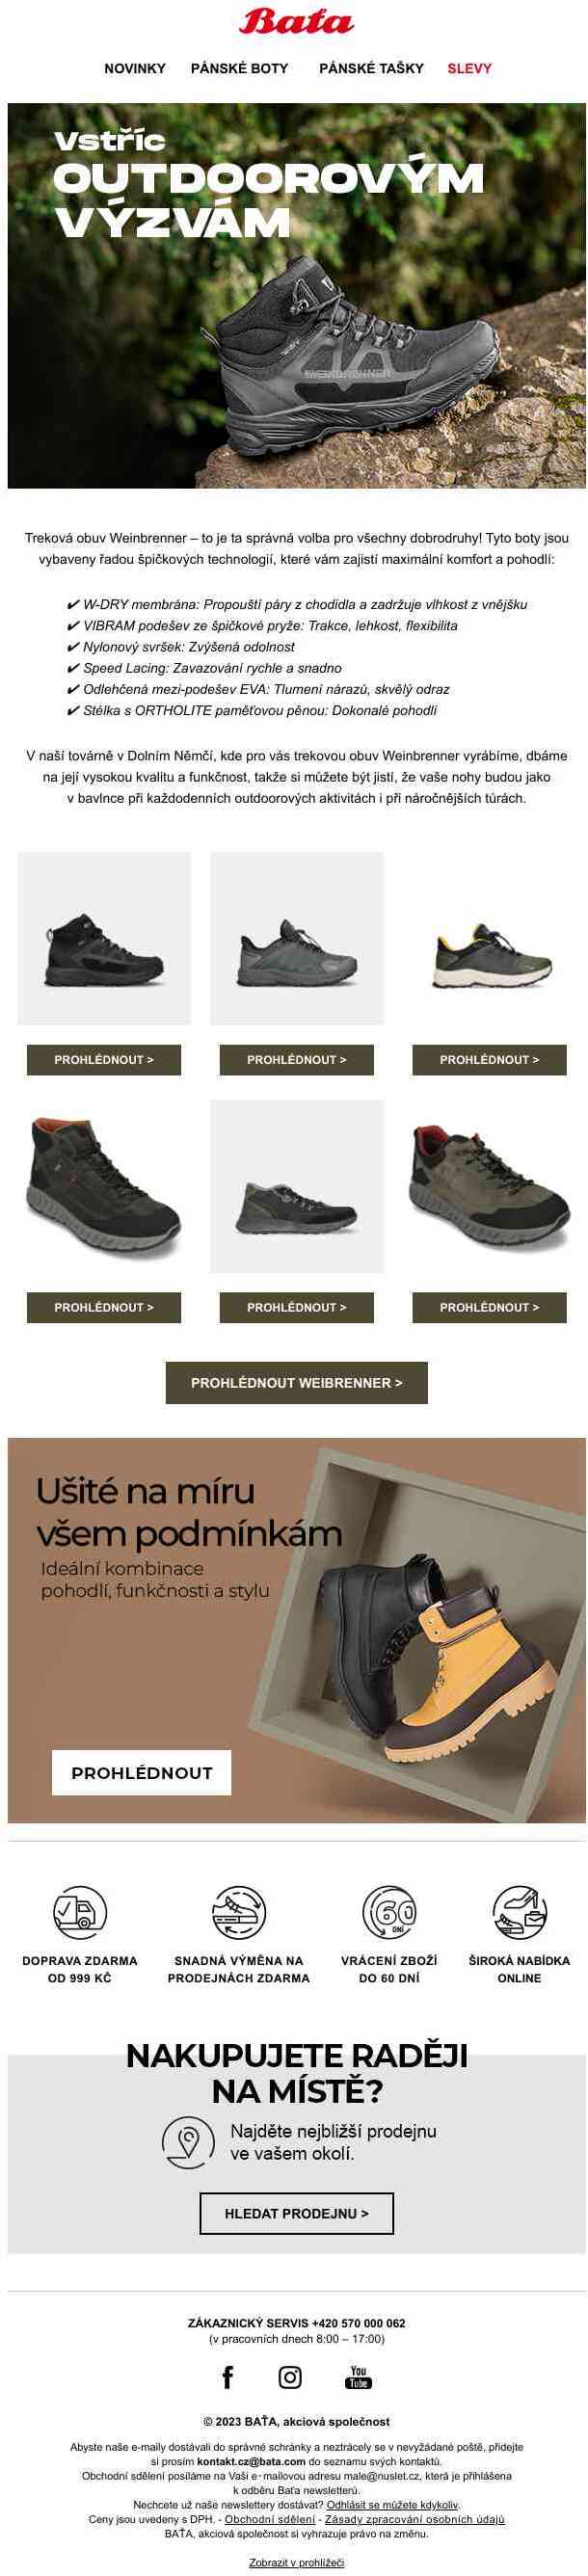 Nová kolekce prémiové trekové obuvi Weinbrenner – objevte maximální funkčnost a komfort